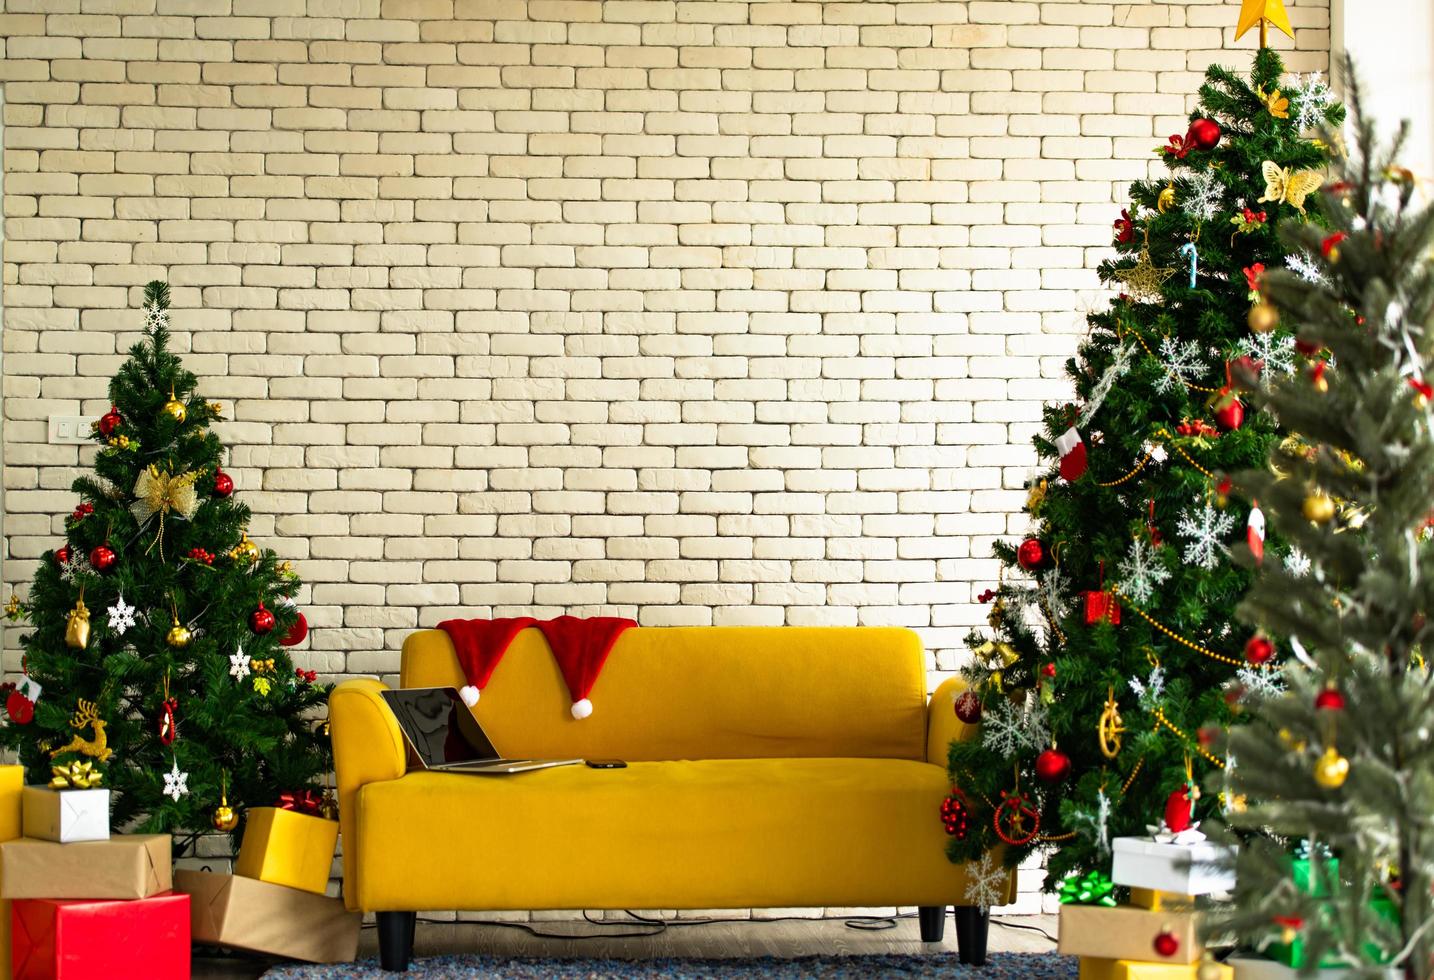 árbol de navidad decorado en la sala de estar foto